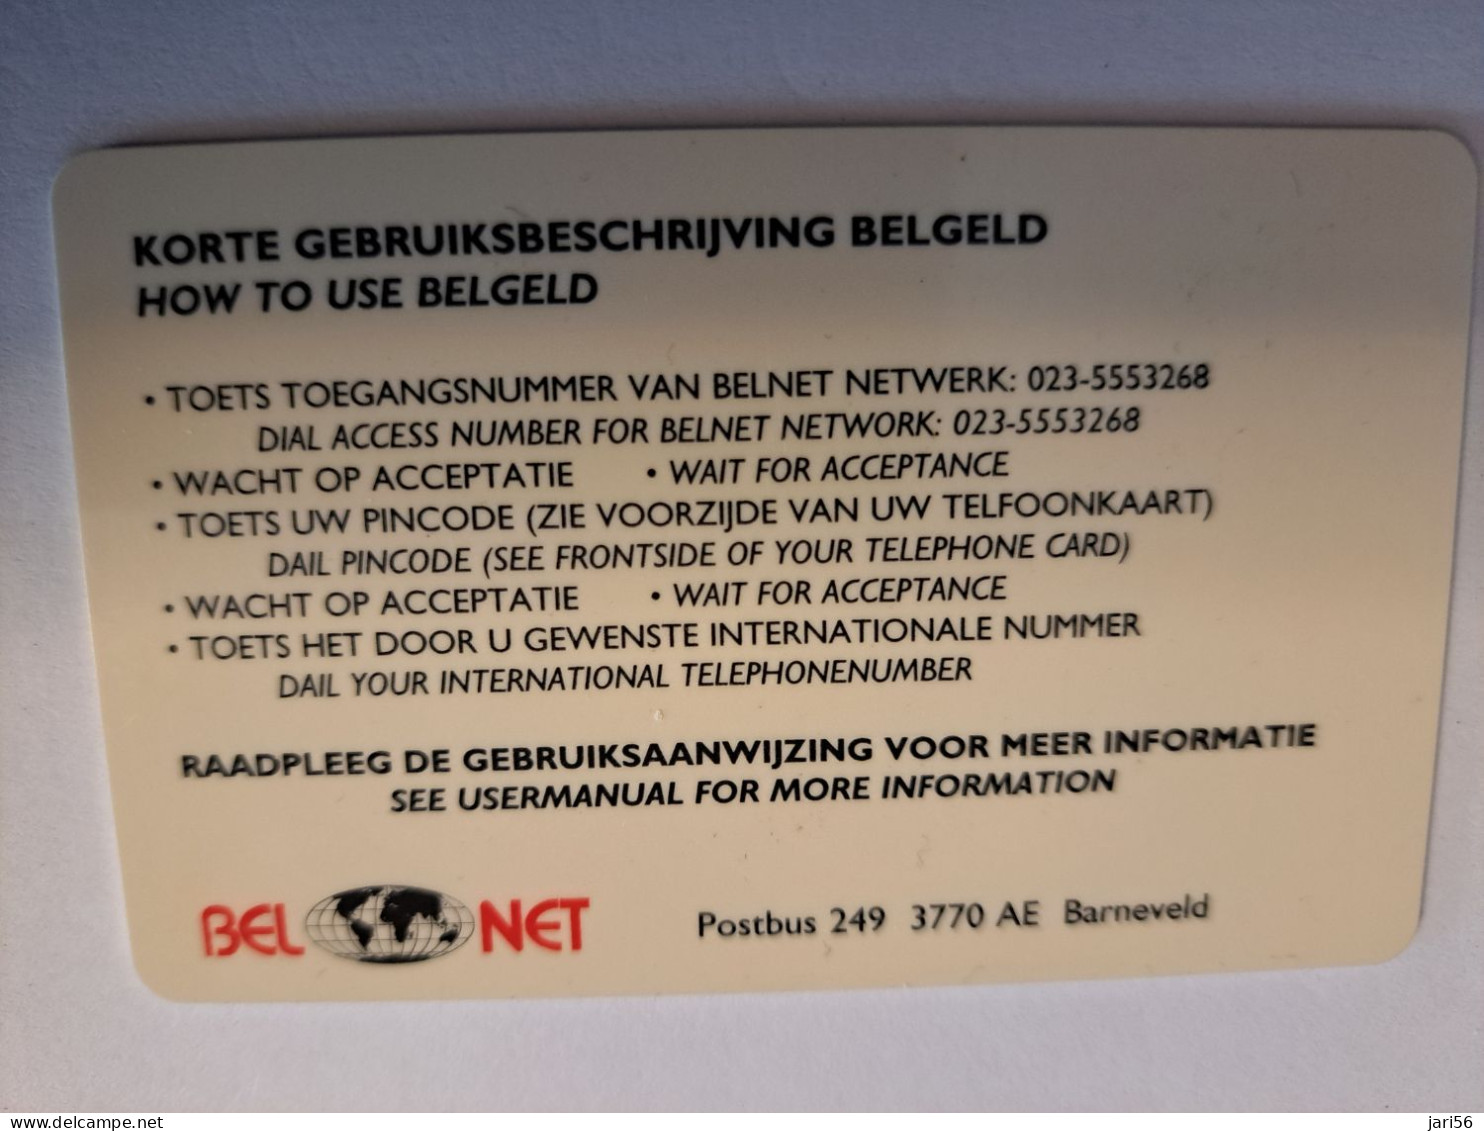 NETHERLANDS  PREPAID / HFL 50,- / INDONESIA / BEL NET/ BELGELD/ THICK CARD  / / OLDER CARD ! / USED  CARD   ** 16219** - [3] Handy-, Prepaid- U. Aufladkarten